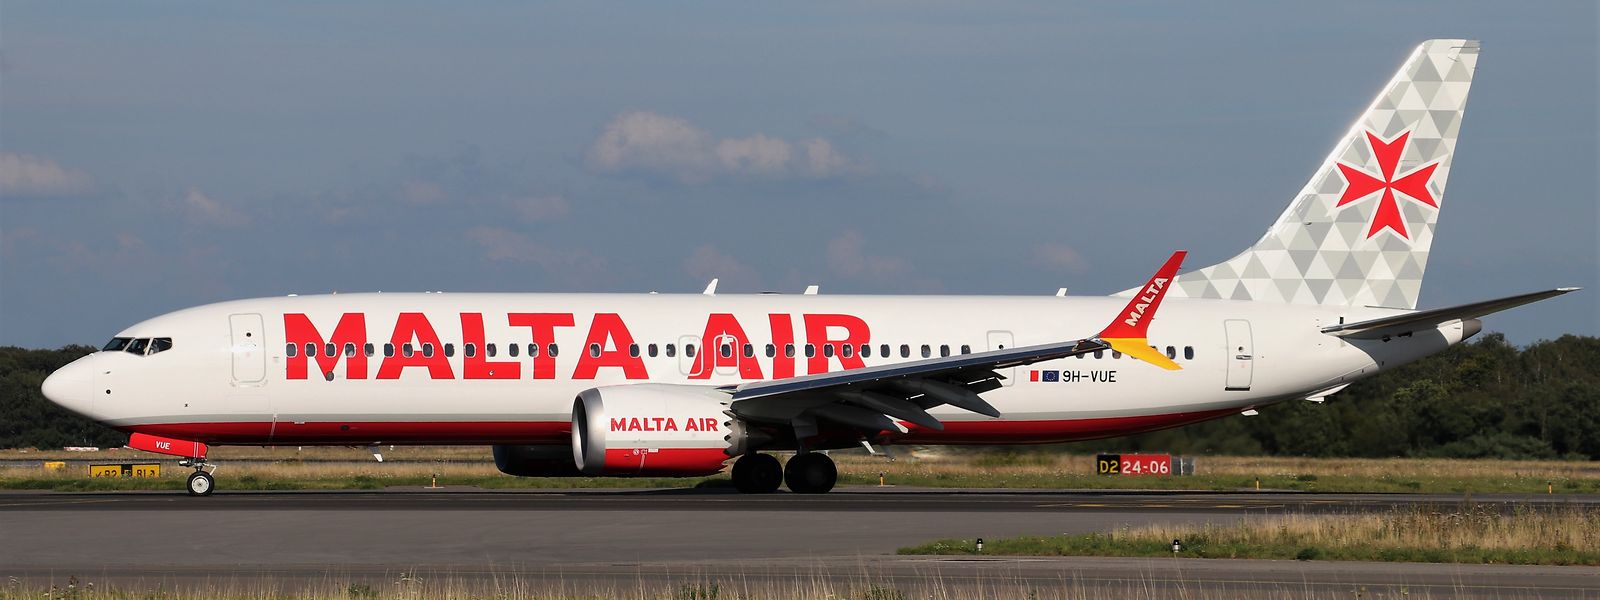 Malta Air wurde 2019 gegründet und gehört zum Billigflieger Ryanair.